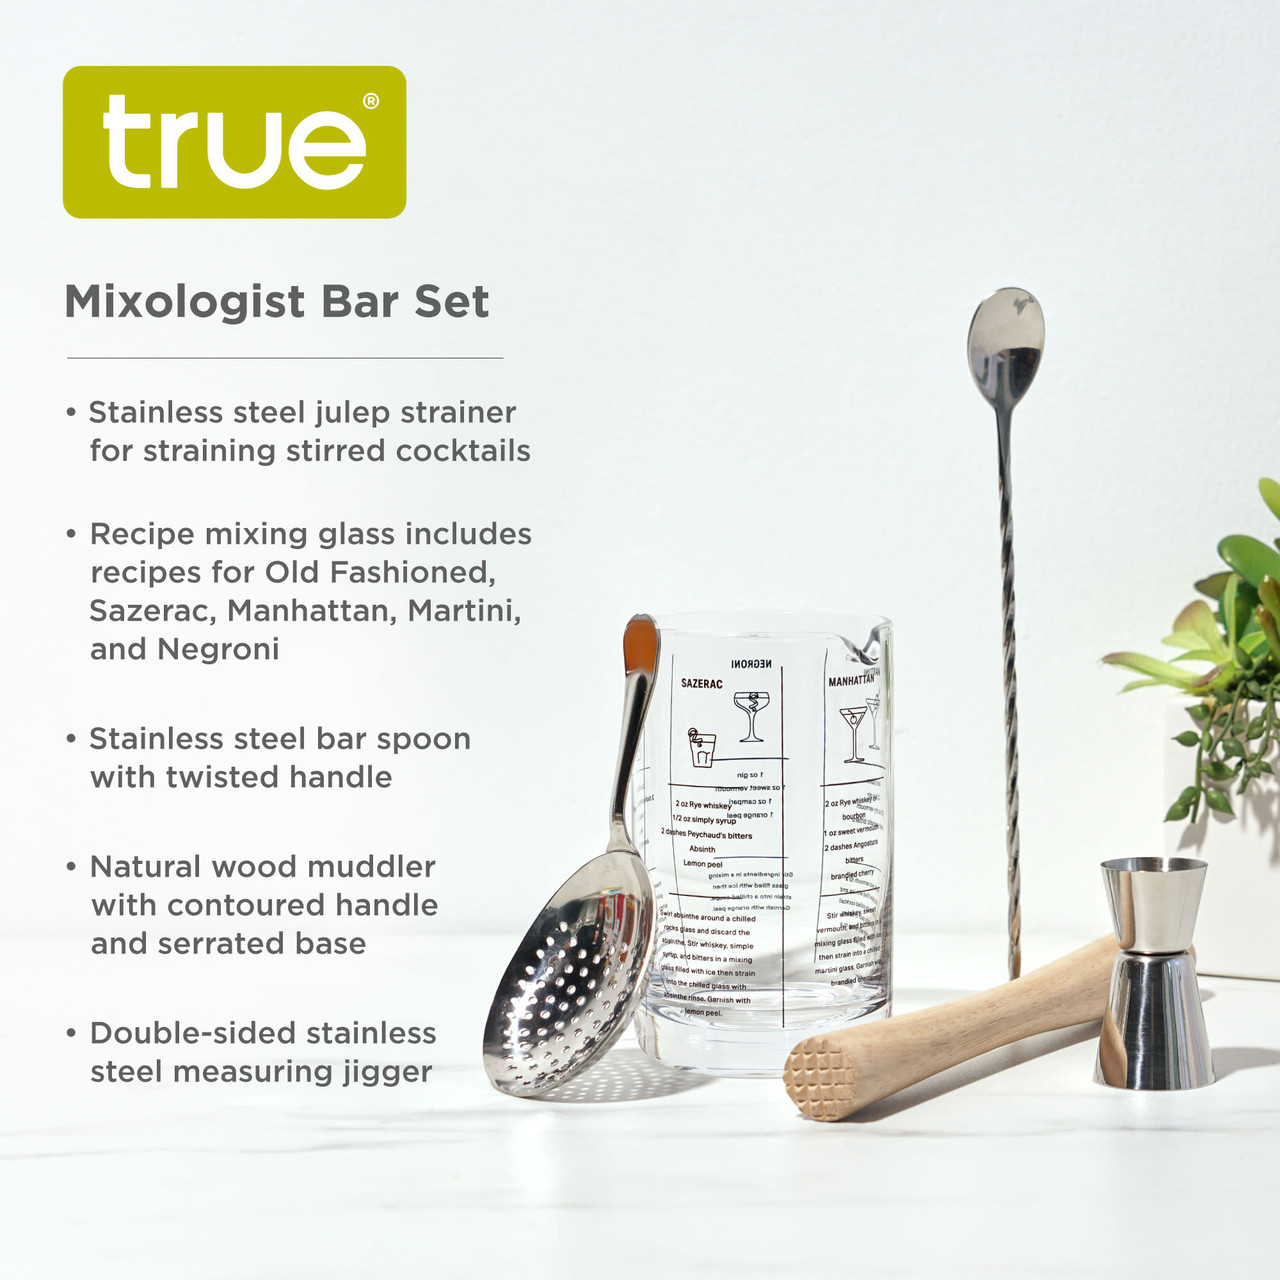 Mixologist Bar Set by True